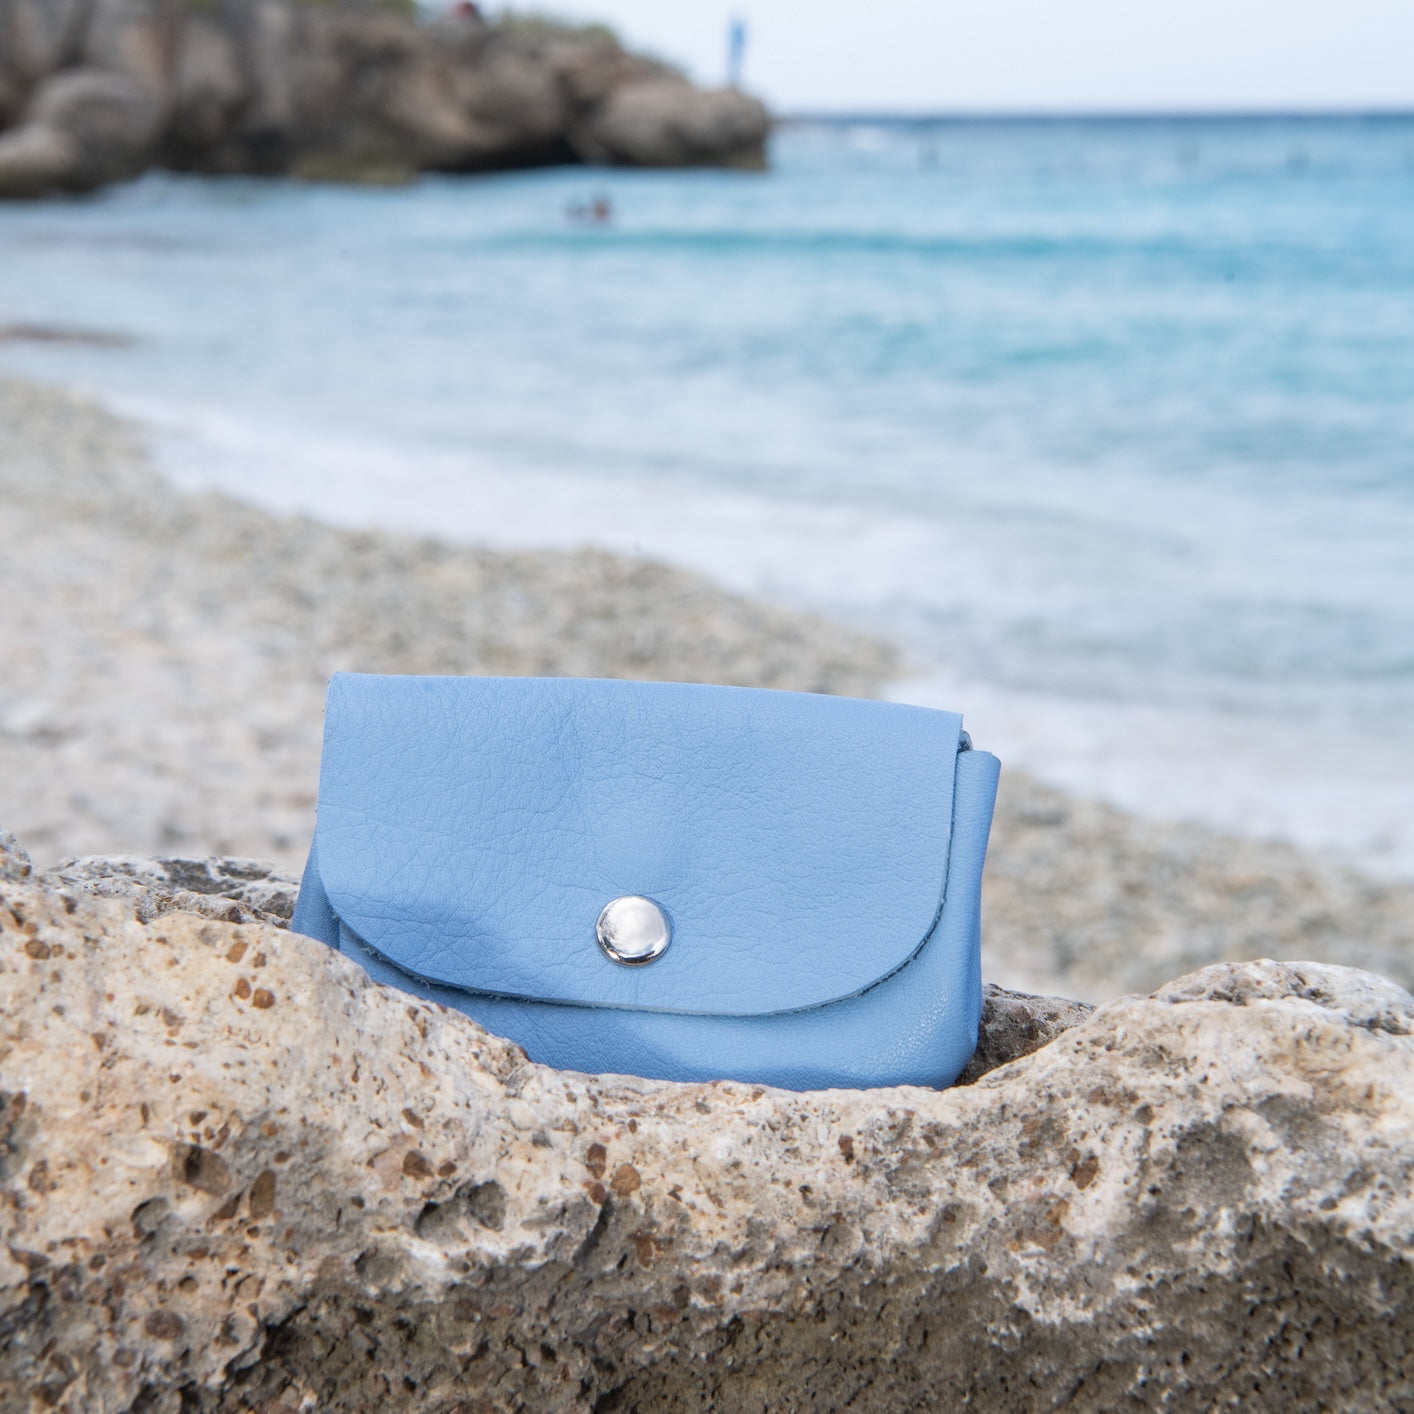 Handgemaakte leren portemonnee met 3 vakken inclusief verborgen binnenvak in lichtblauw op beach